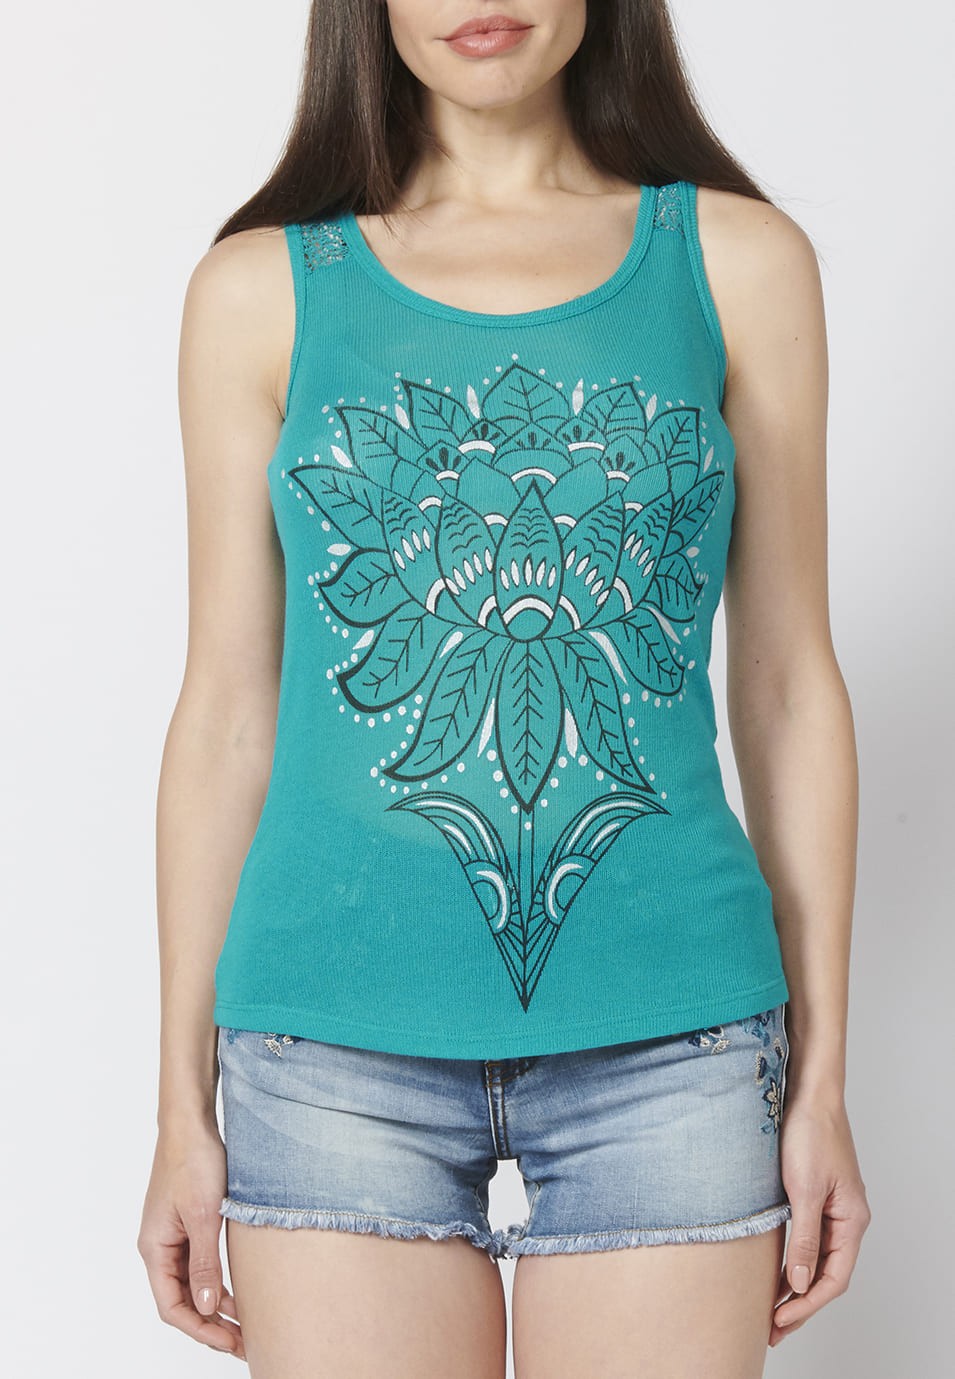 Camiseta Top tirantes con Escote Redondo y Estampado Floral para Mujer color Menta 4